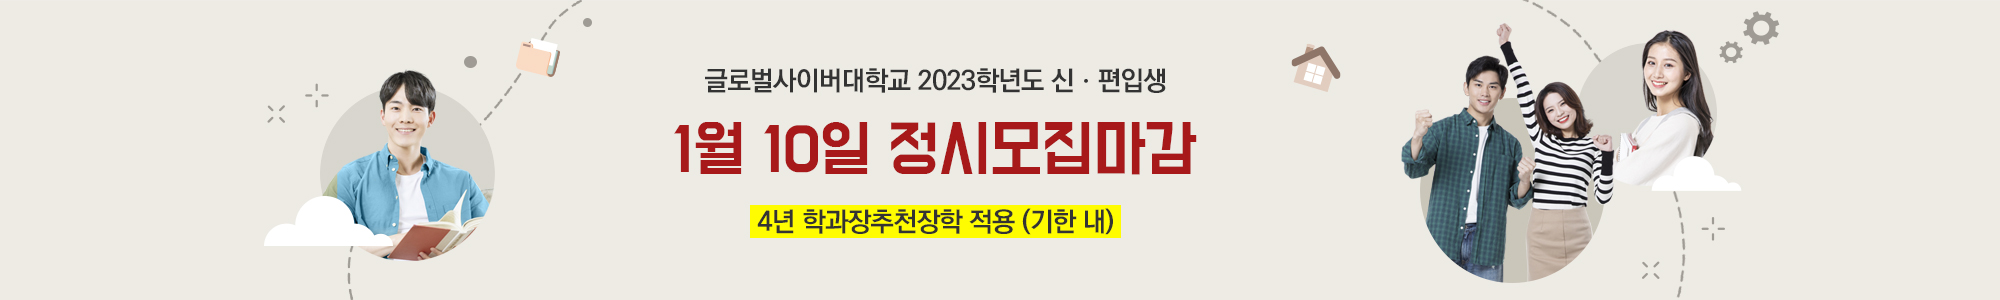 2023-1학기 신·편입생 모집안내 2022.12.01.(목) ~ 2023.01.10.(화)